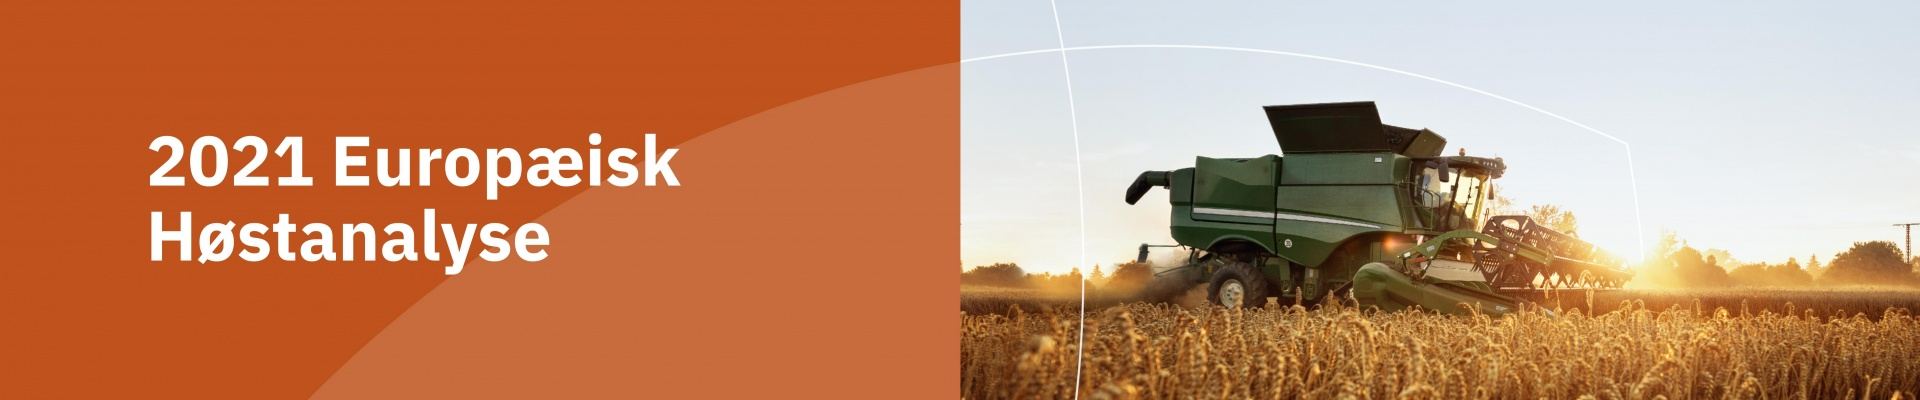 Alltechs europæiske høstanalyse 2021